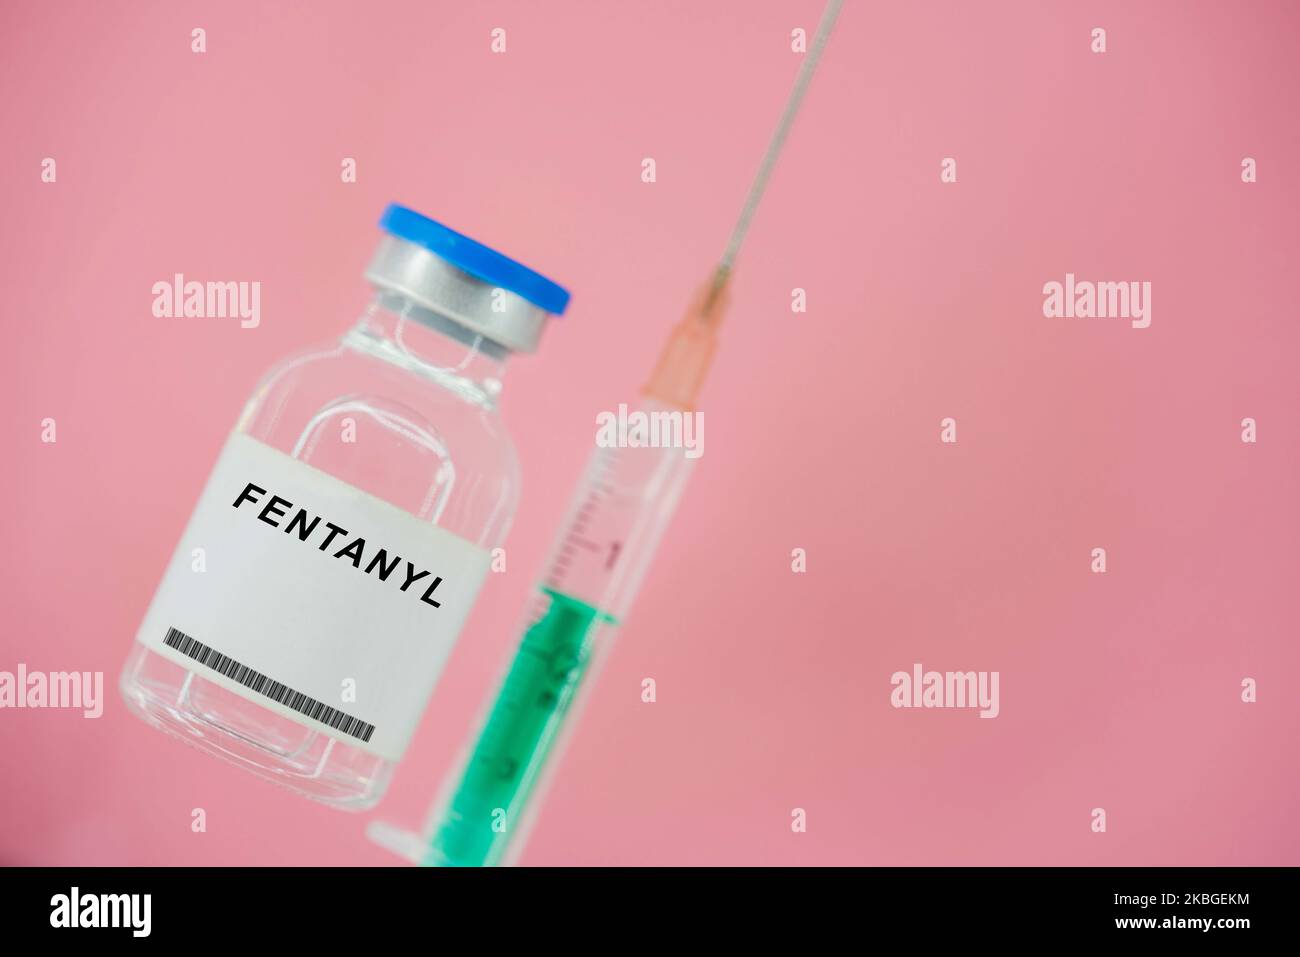 Flacon médical de fentanyl. Le fentanil est un opioïde utilisé comme analgésique et comme médicament d'anesthésie. Banque D'Images